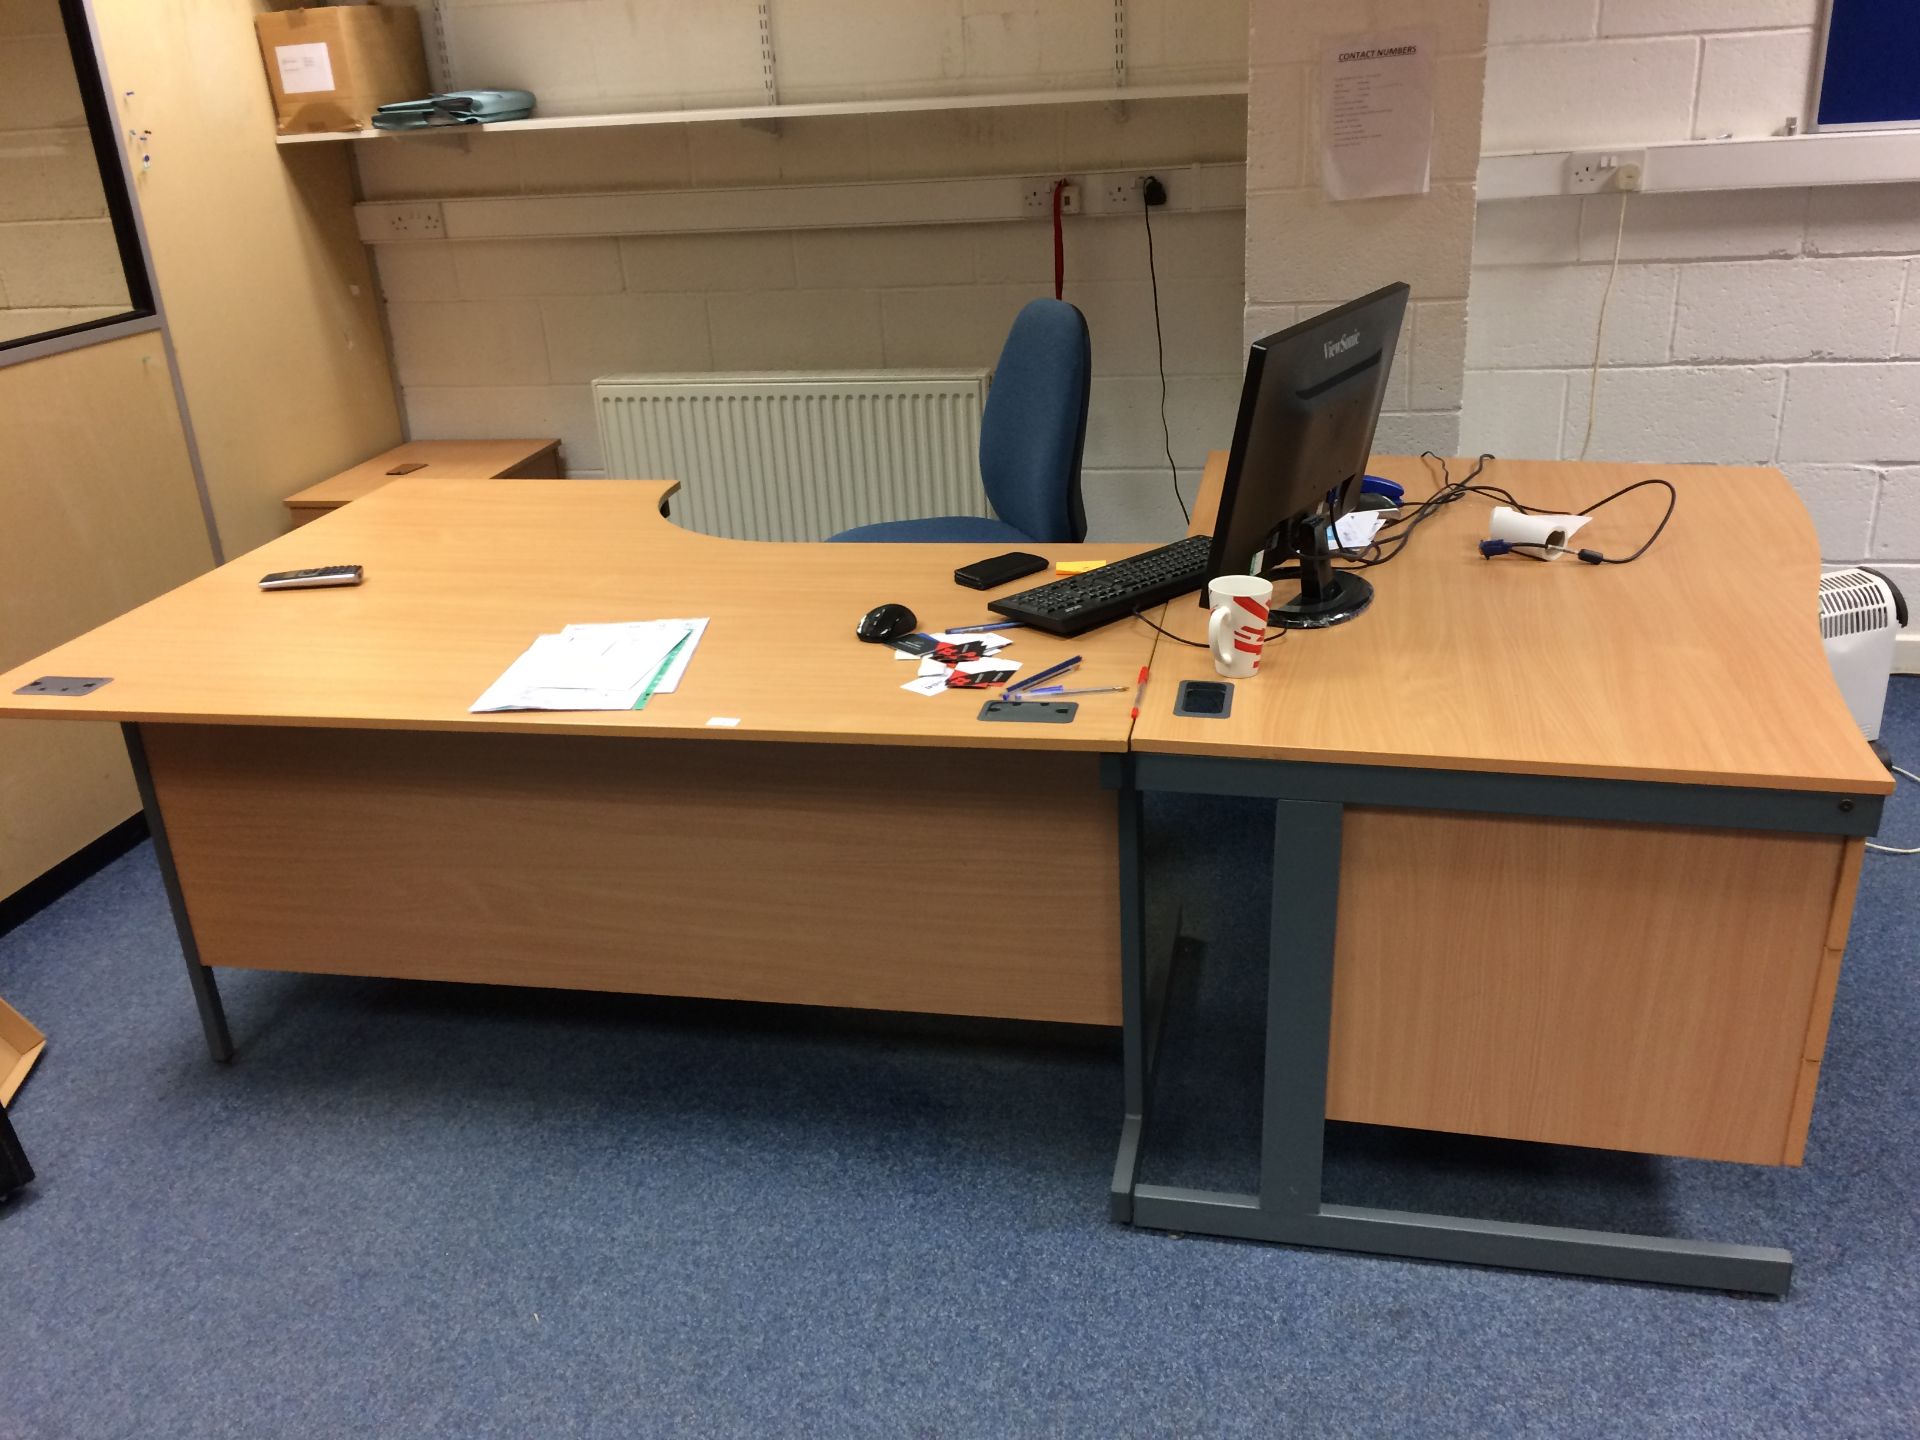 2 x office desks, 1 blue office chair an